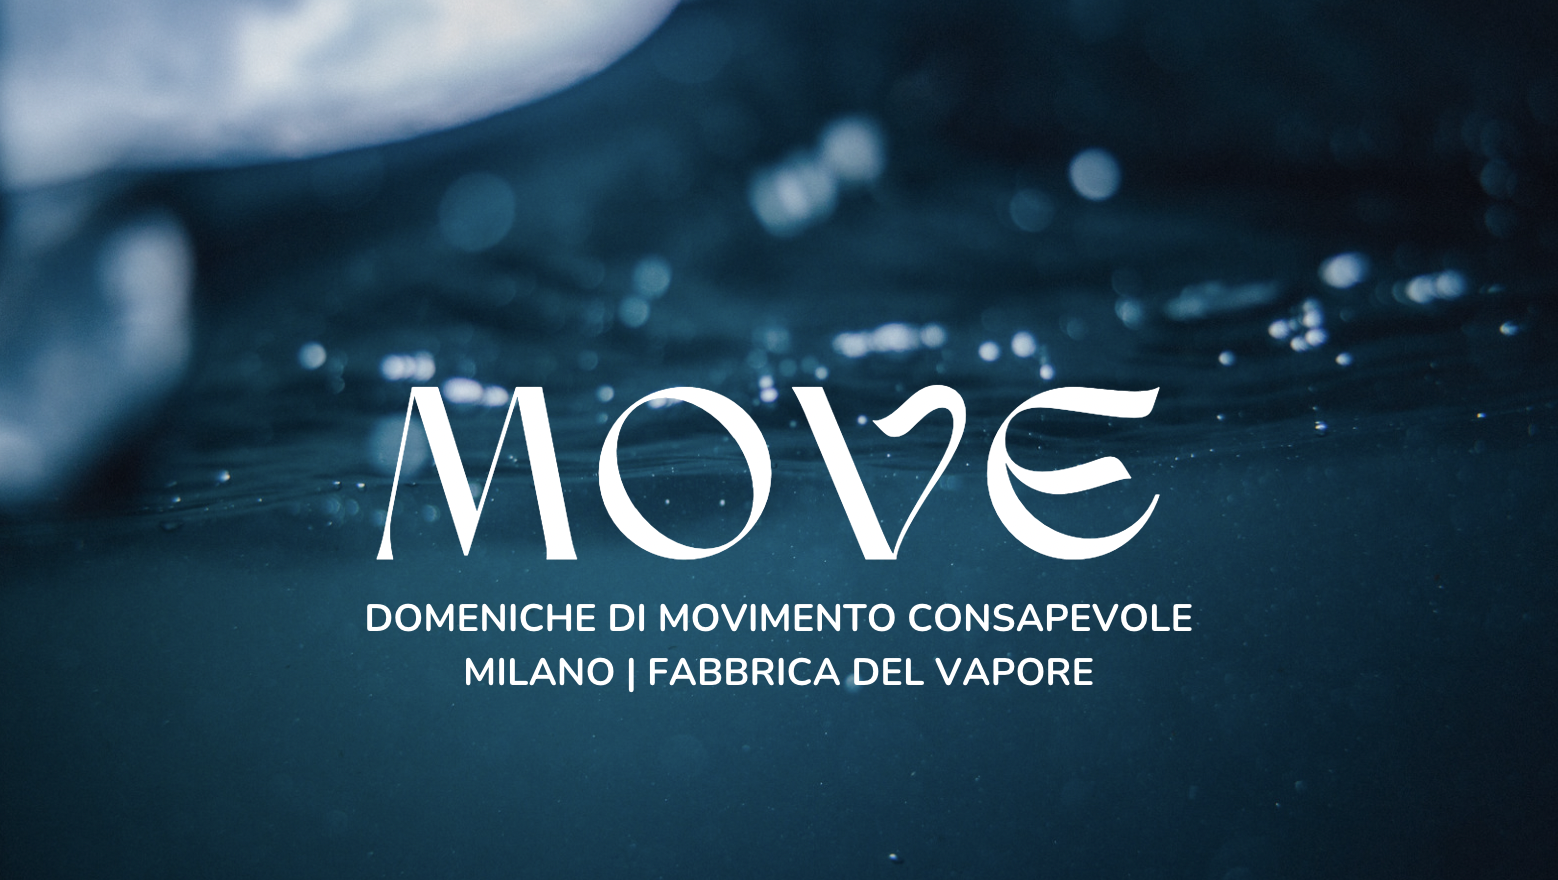 Movement Medicine Milano